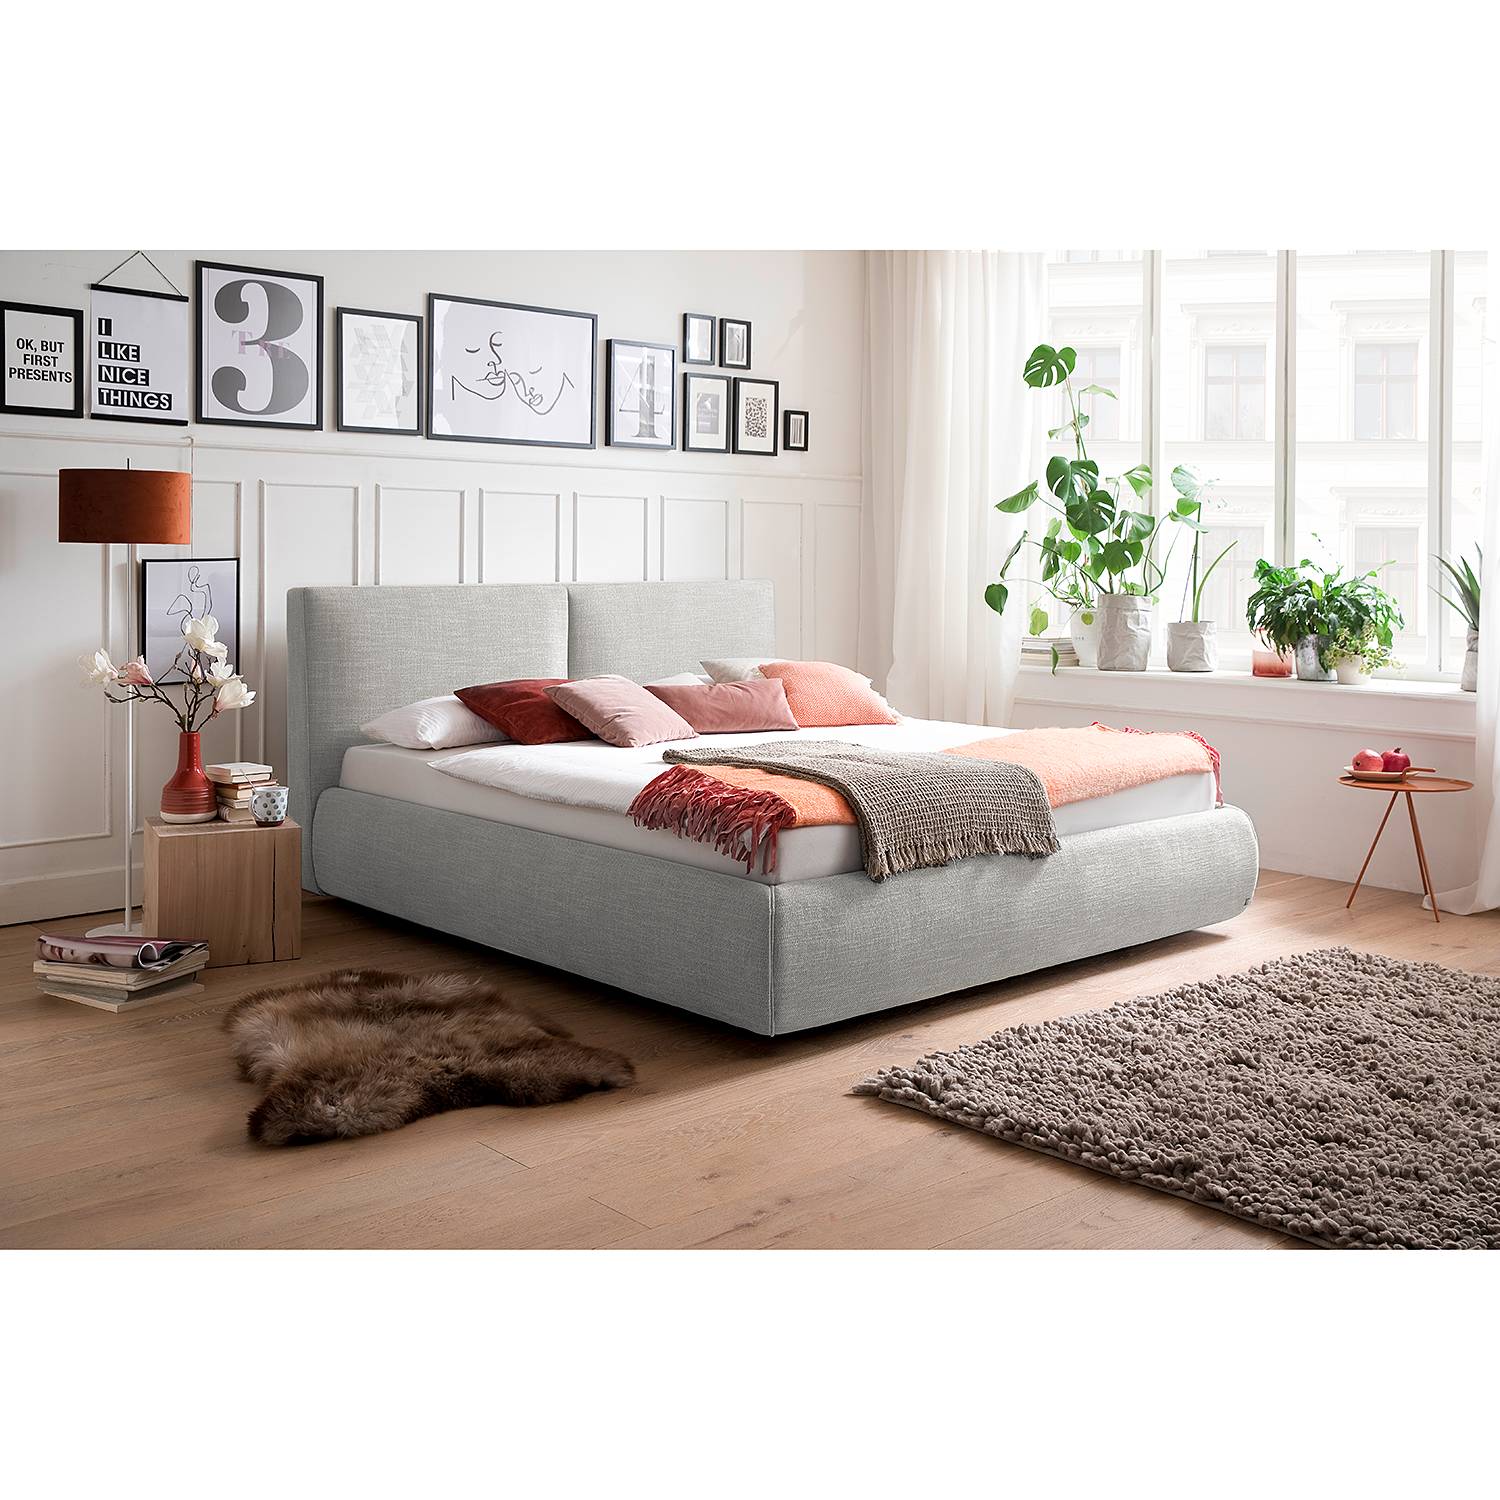 meise.möbel Polsterbett Atesio II 180x200 cm 90% Polyester/10% Baumwolle Hellgrau mit Bettkästen/Lattenrost von meise.möbel